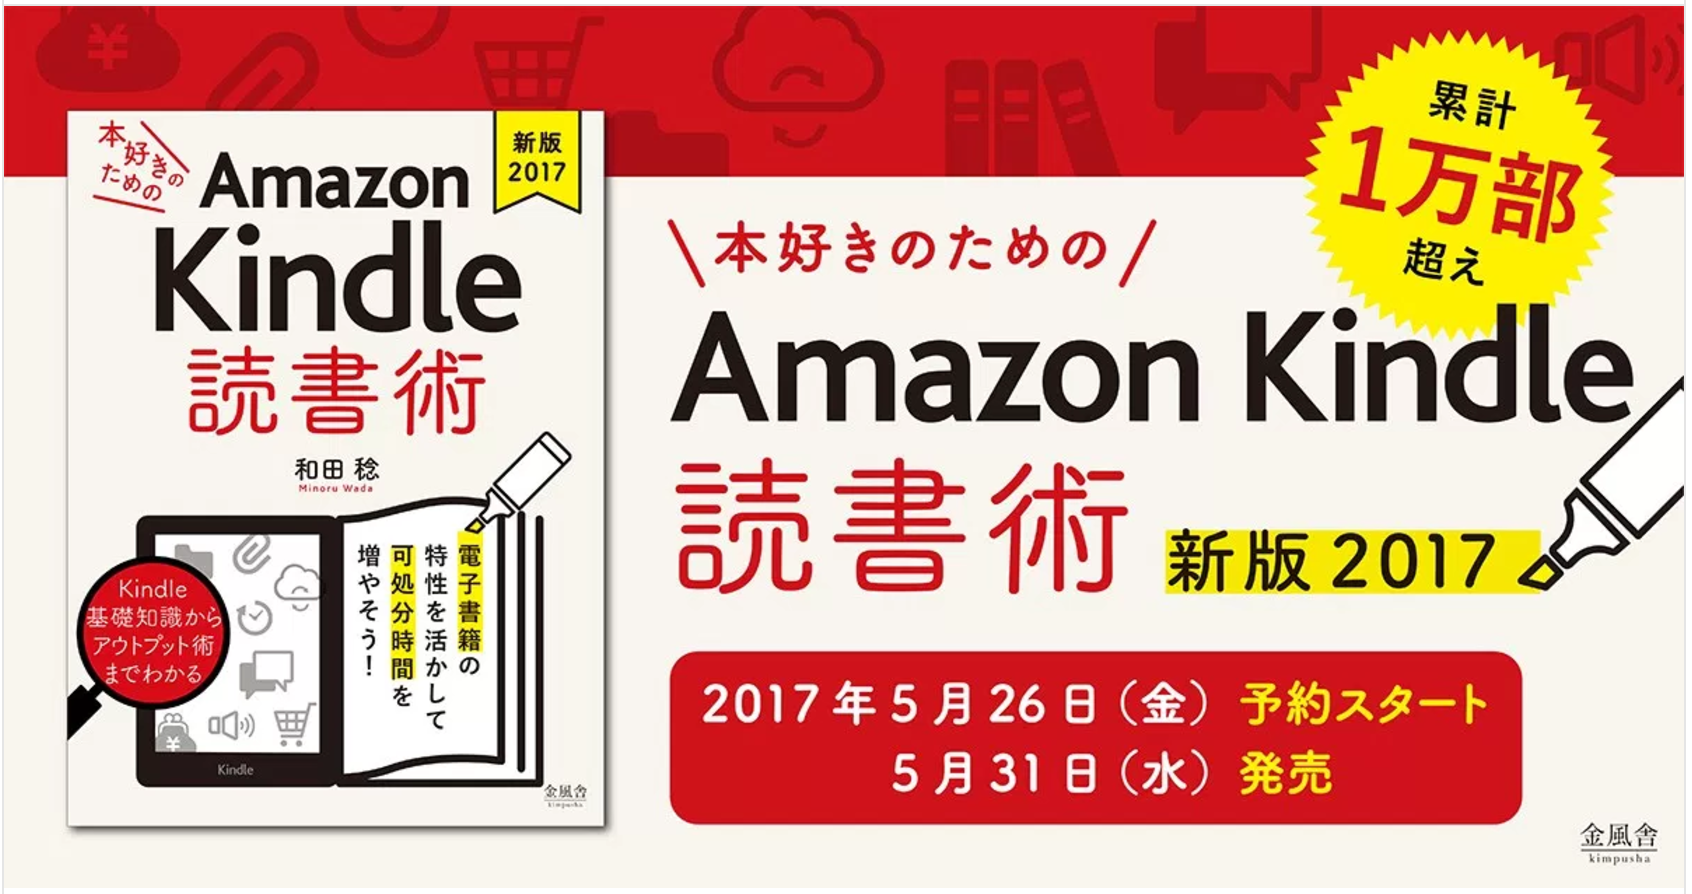 「《新版2017》本好きのためのAmazon Kindle 読書術」予約受付開始! 5/31配信です。